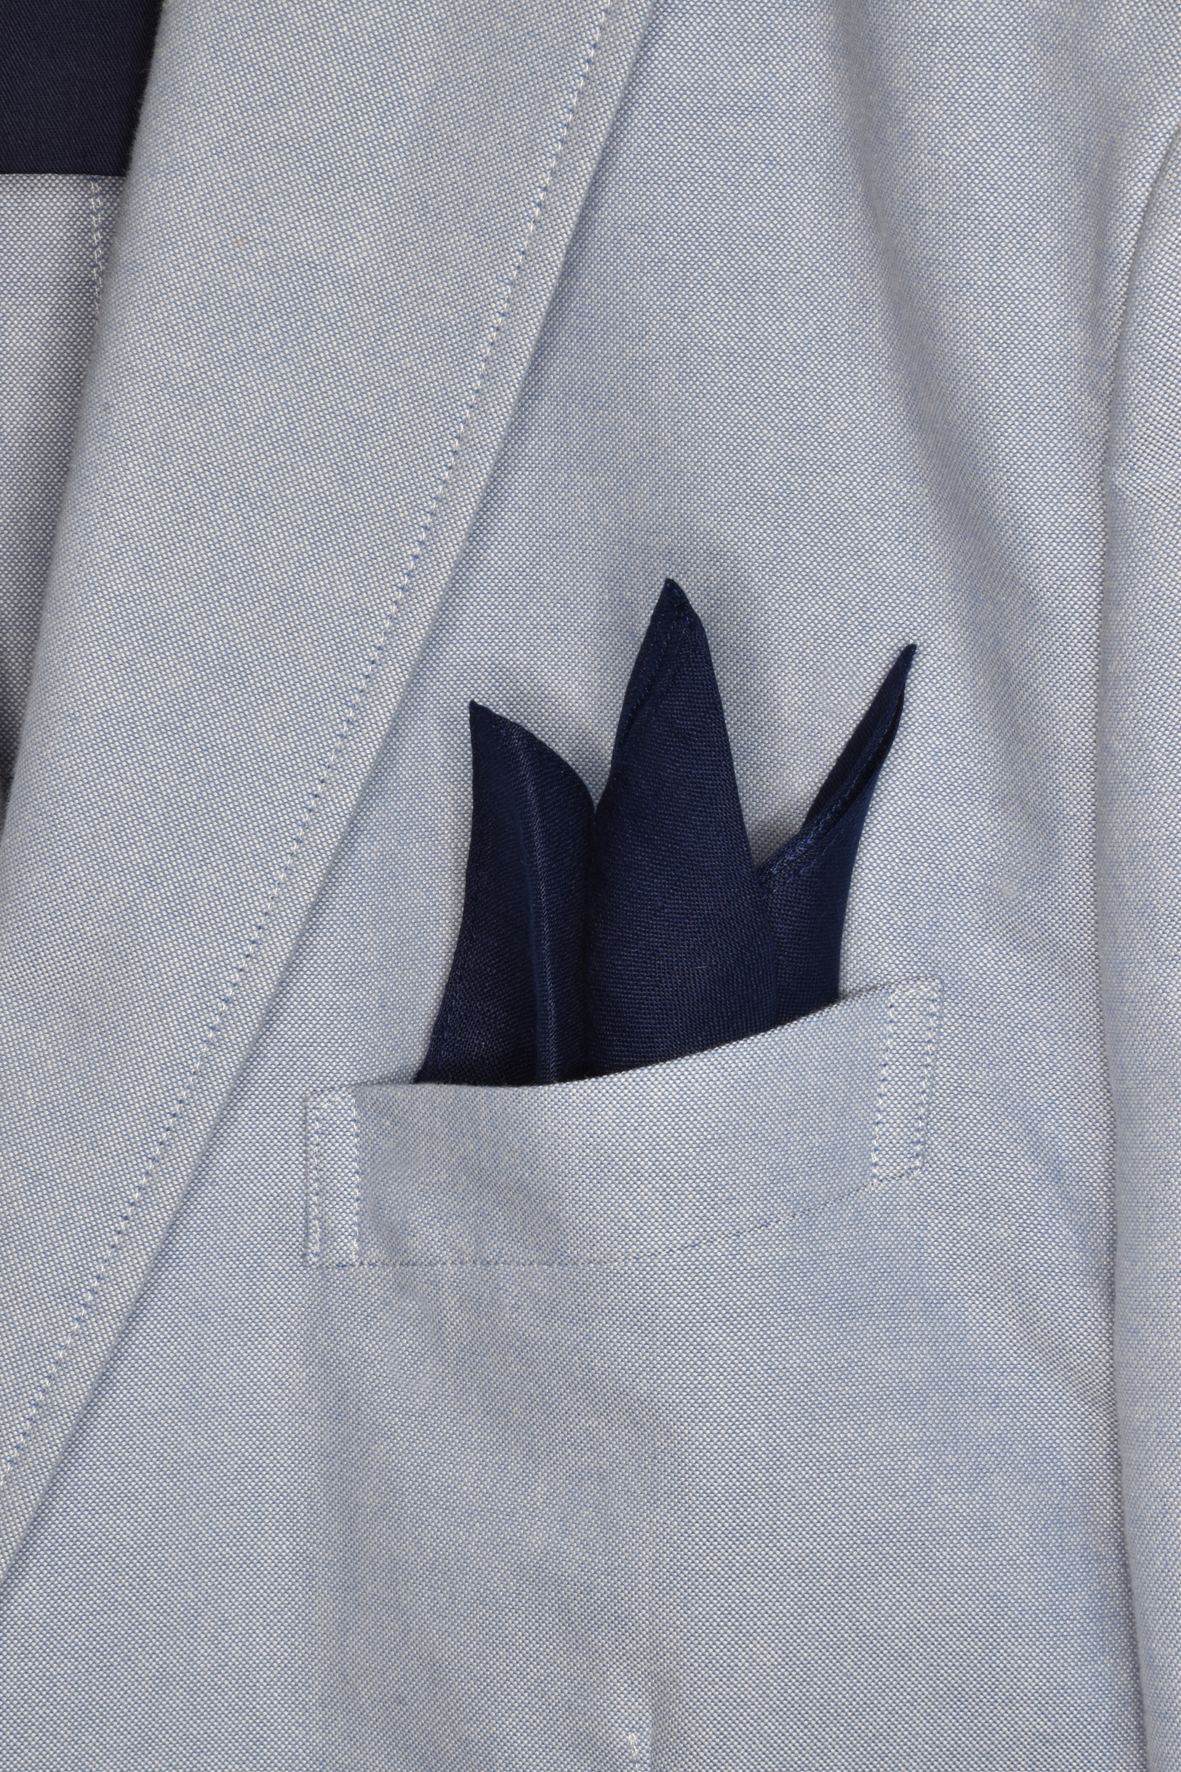 Pochette blu scuro / blue pocket square